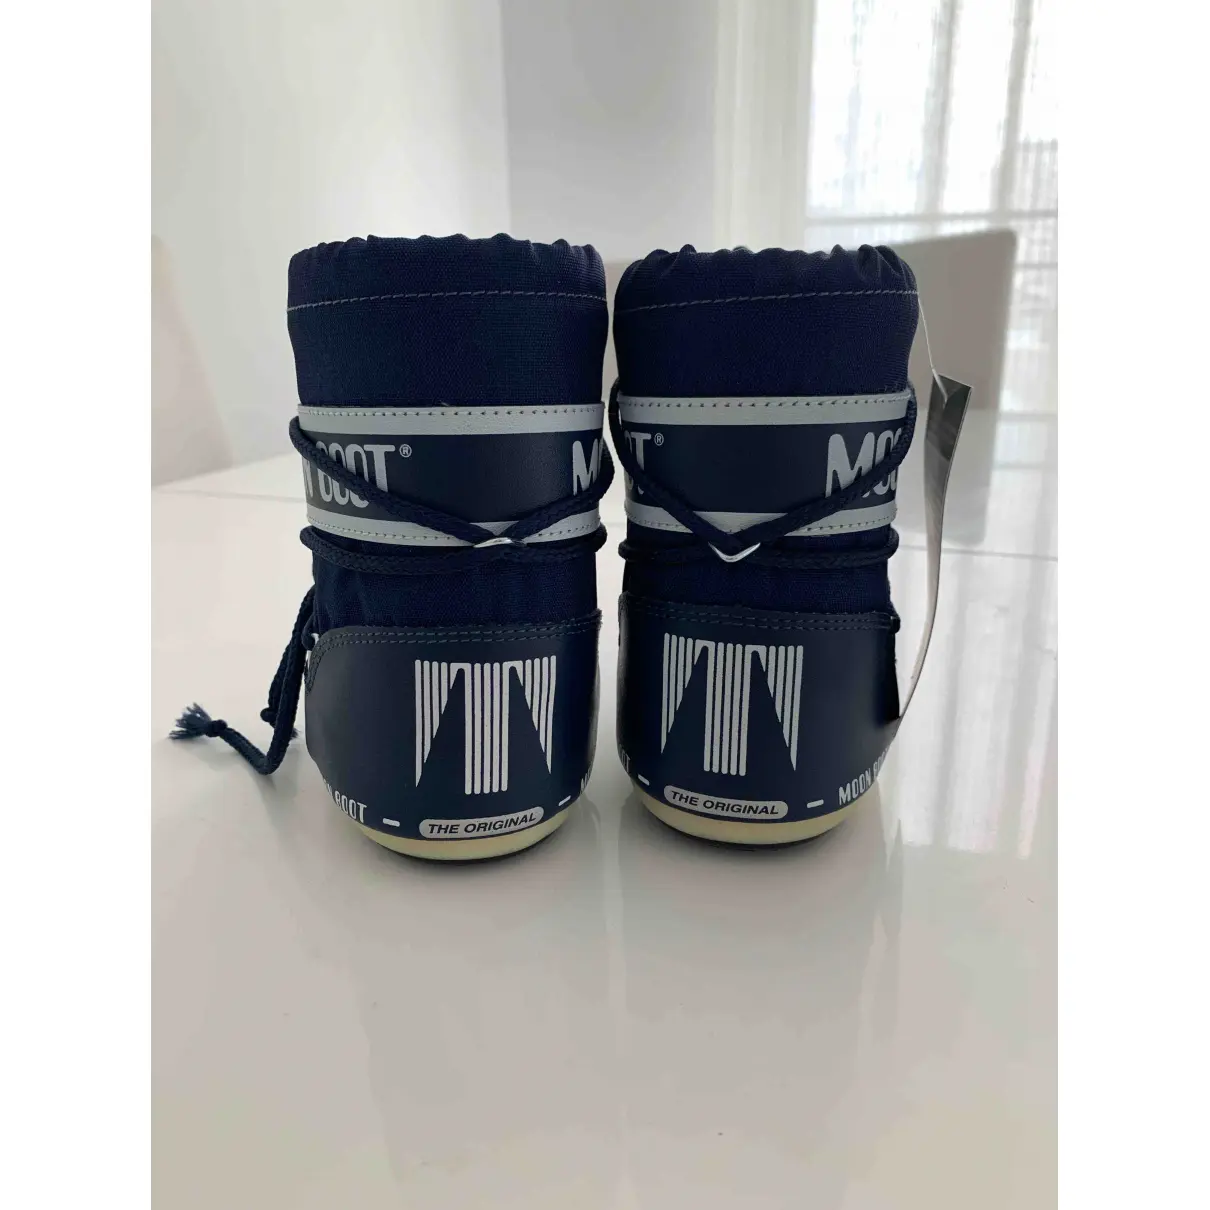 Luxury Moon Boot Boots Kids